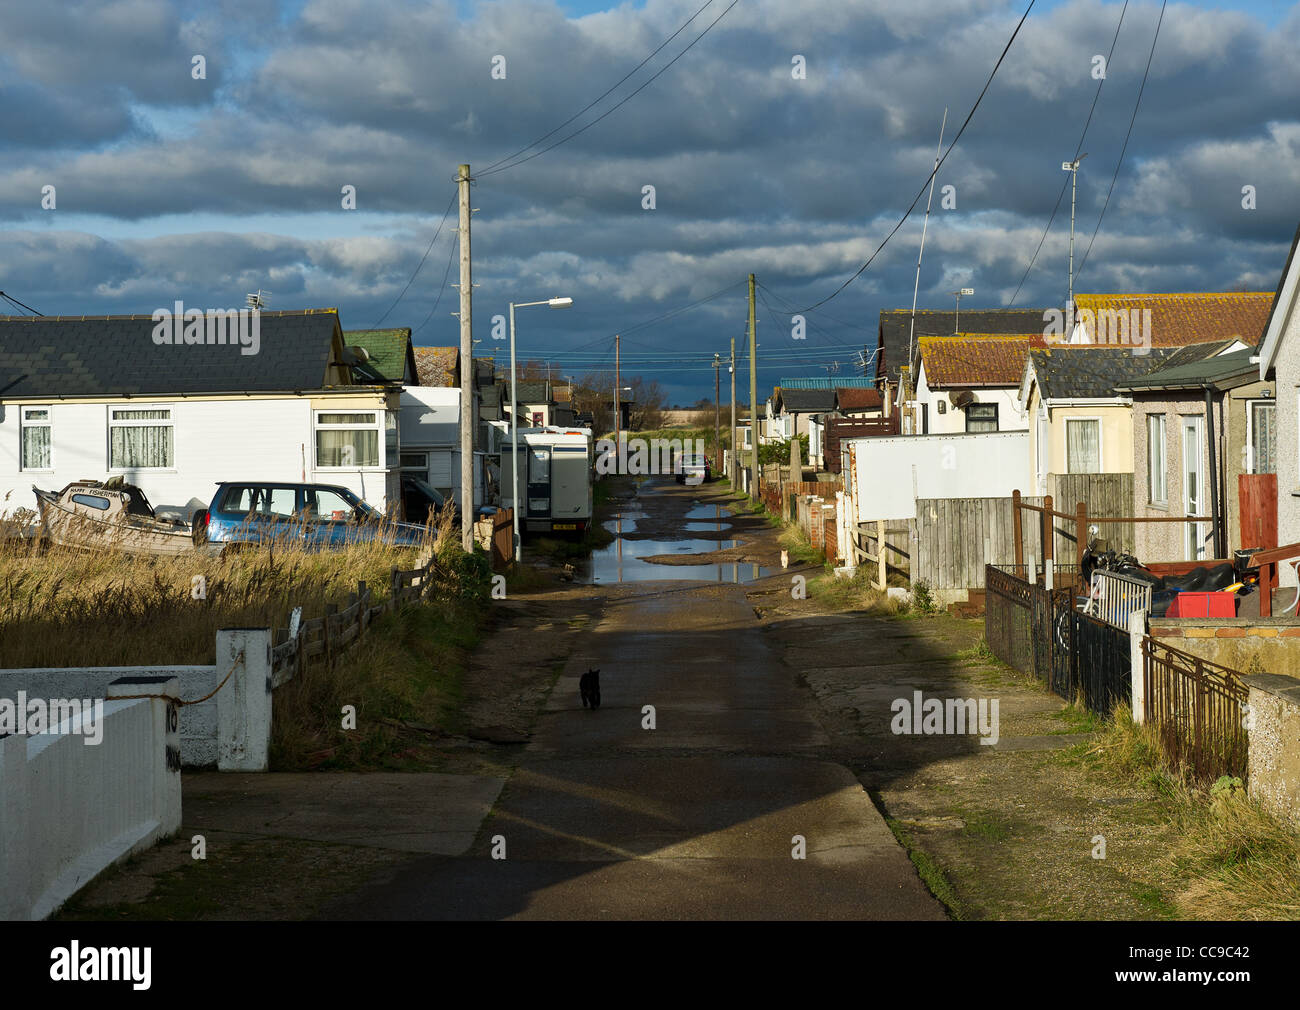 Una strada di case malandate a Jaywick, nell'Essex, nel Regno Unito. Foto Stock